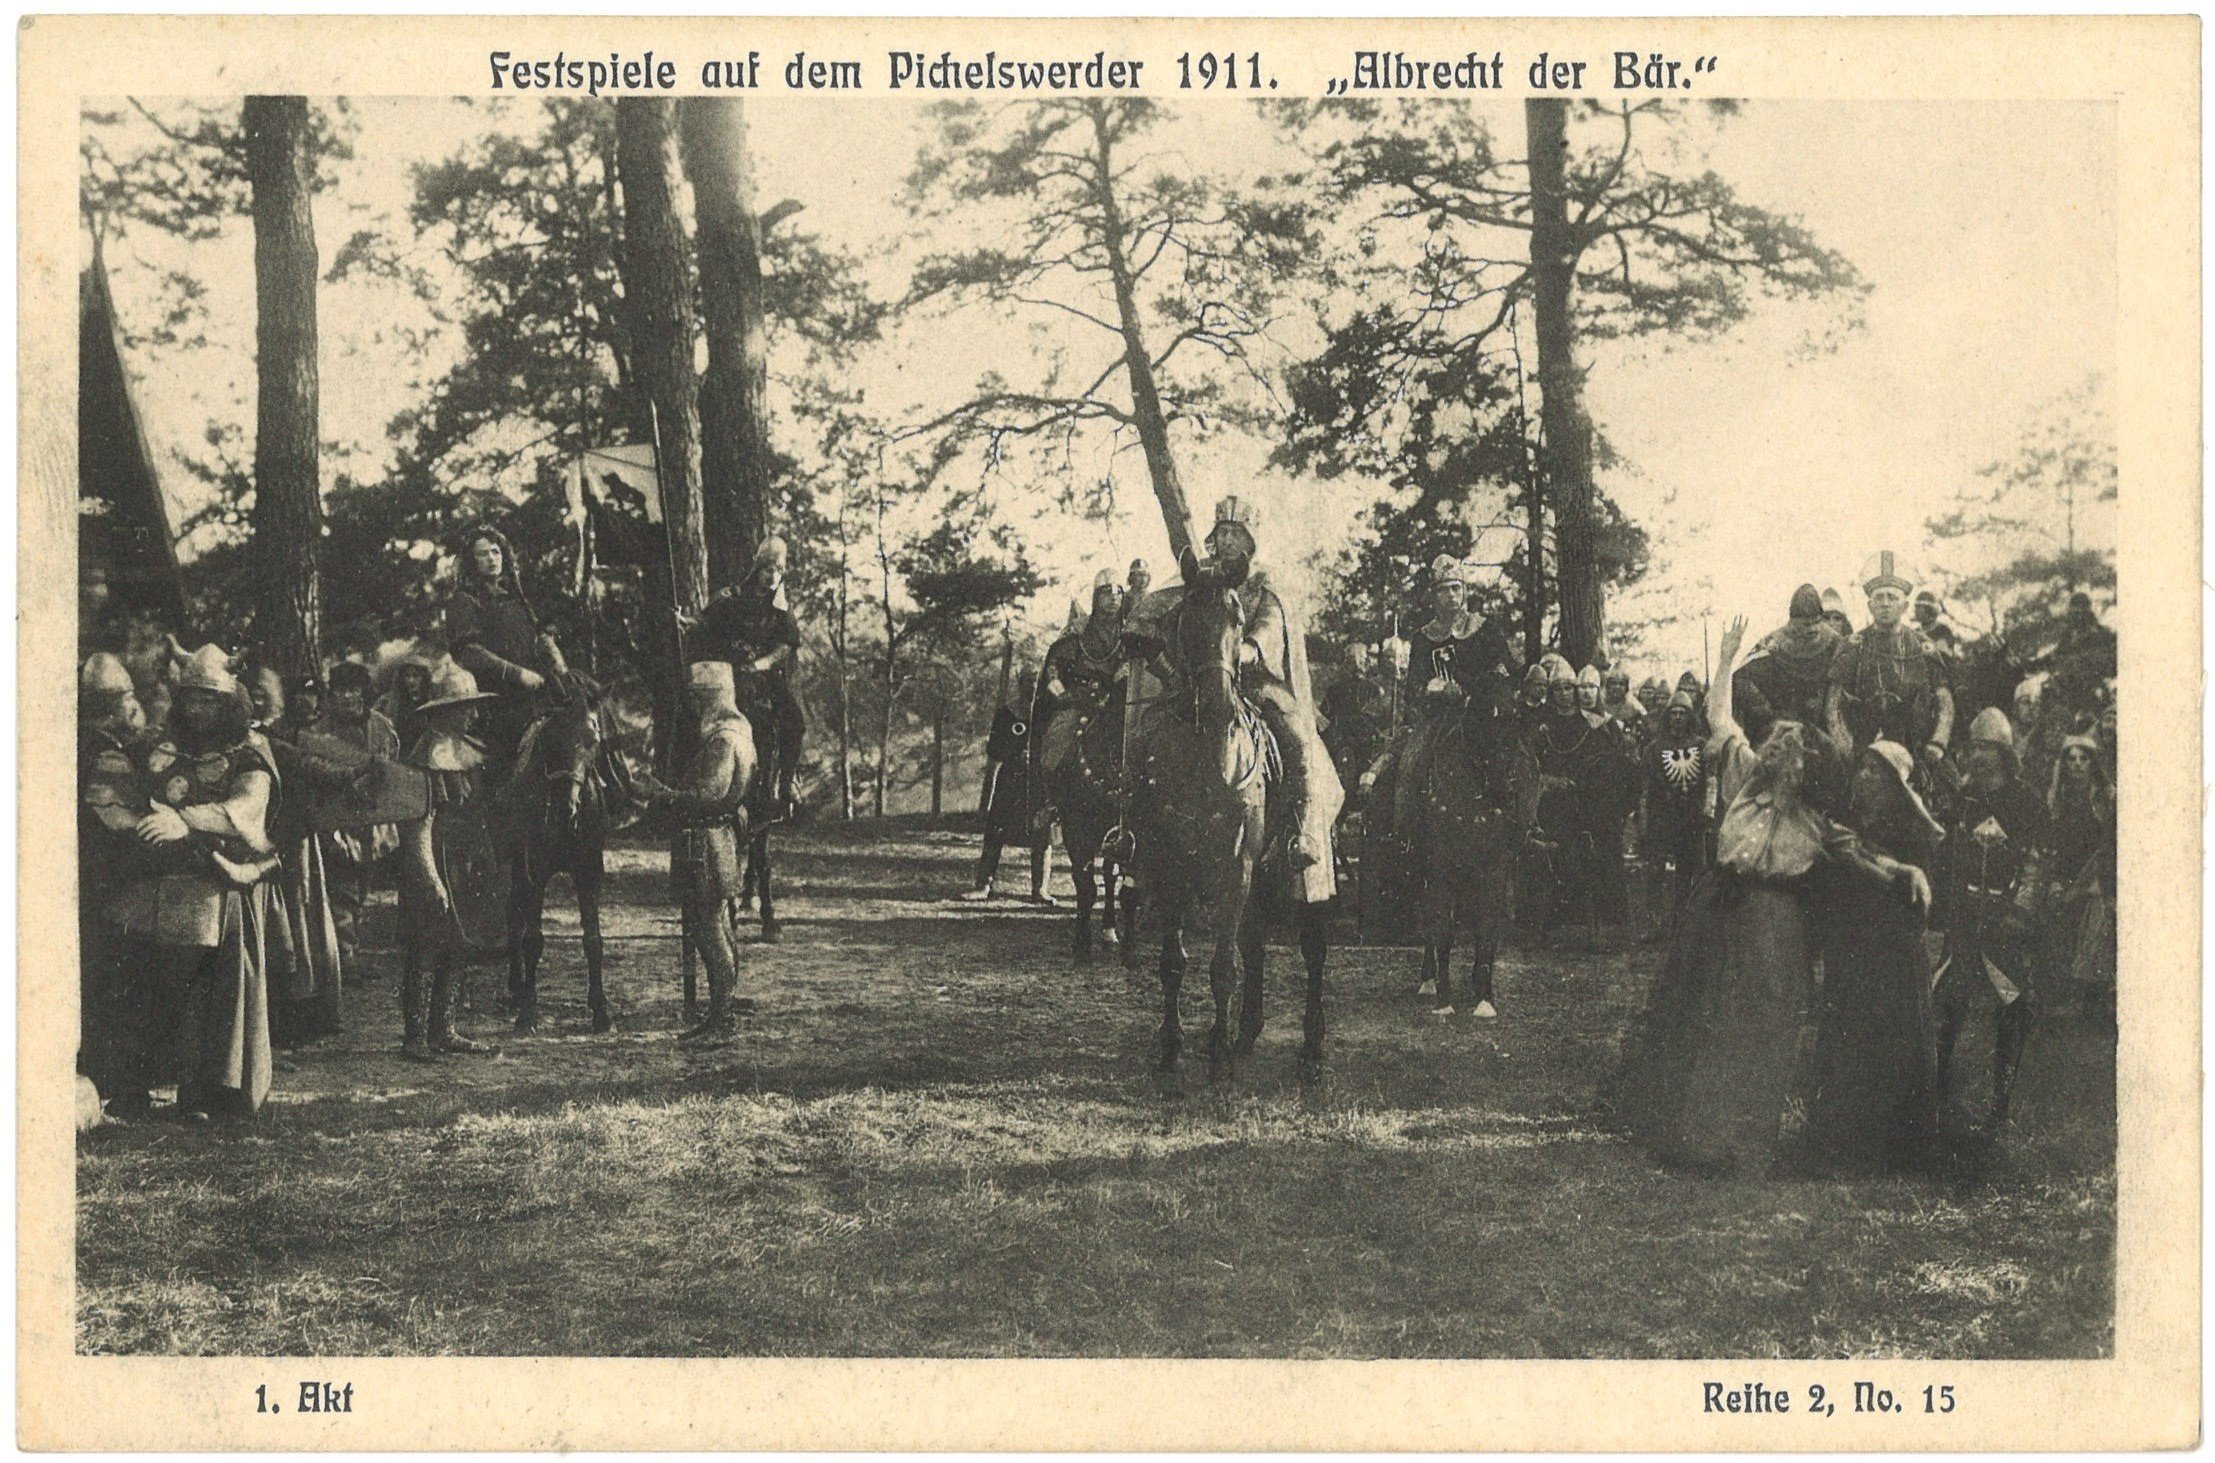 Berlin-Spandau: Festspiele auf dem Pichelswerder 1911. "Albrecht der Bär", 1. Akt (Landesgeschichtliche Vereinigung für die Mark Brandenburg e.V. CC BY)